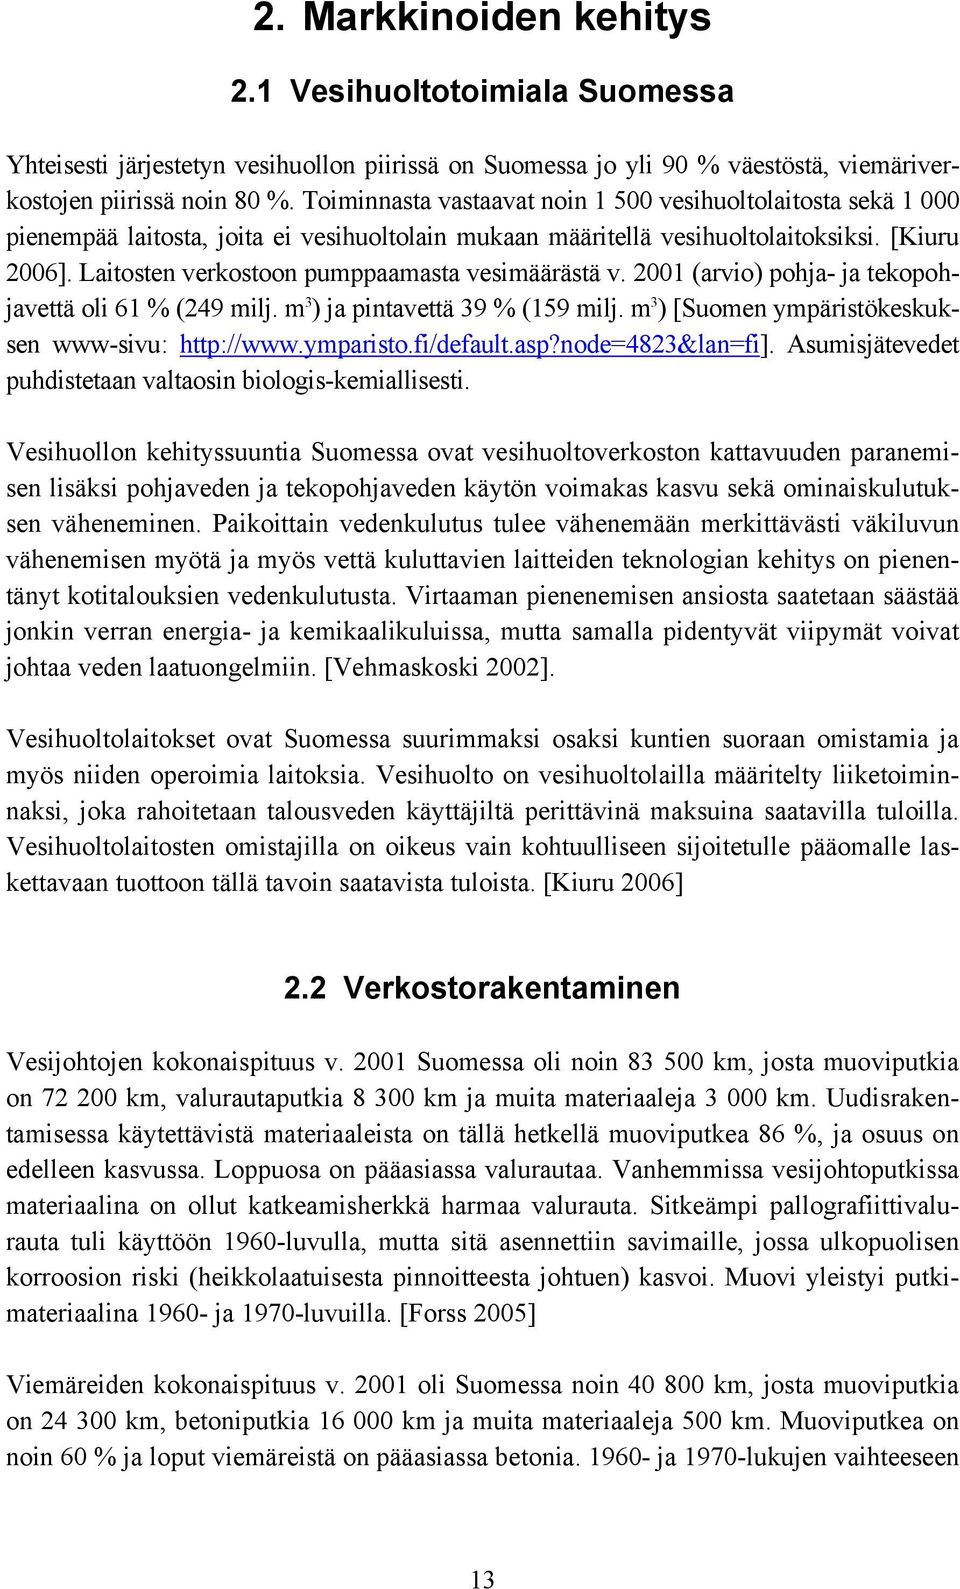 Laitosten verkostoon pumppaamasta vesimäärästä v. 2001 (arvio) pohja- ja tekopohjavettä oli 61 % (249 milj. m 3 ) ja pintavettä 39 % (159 milj. m 3 ) [Suomen ympäristökeskuksen www-sivu: http://www.